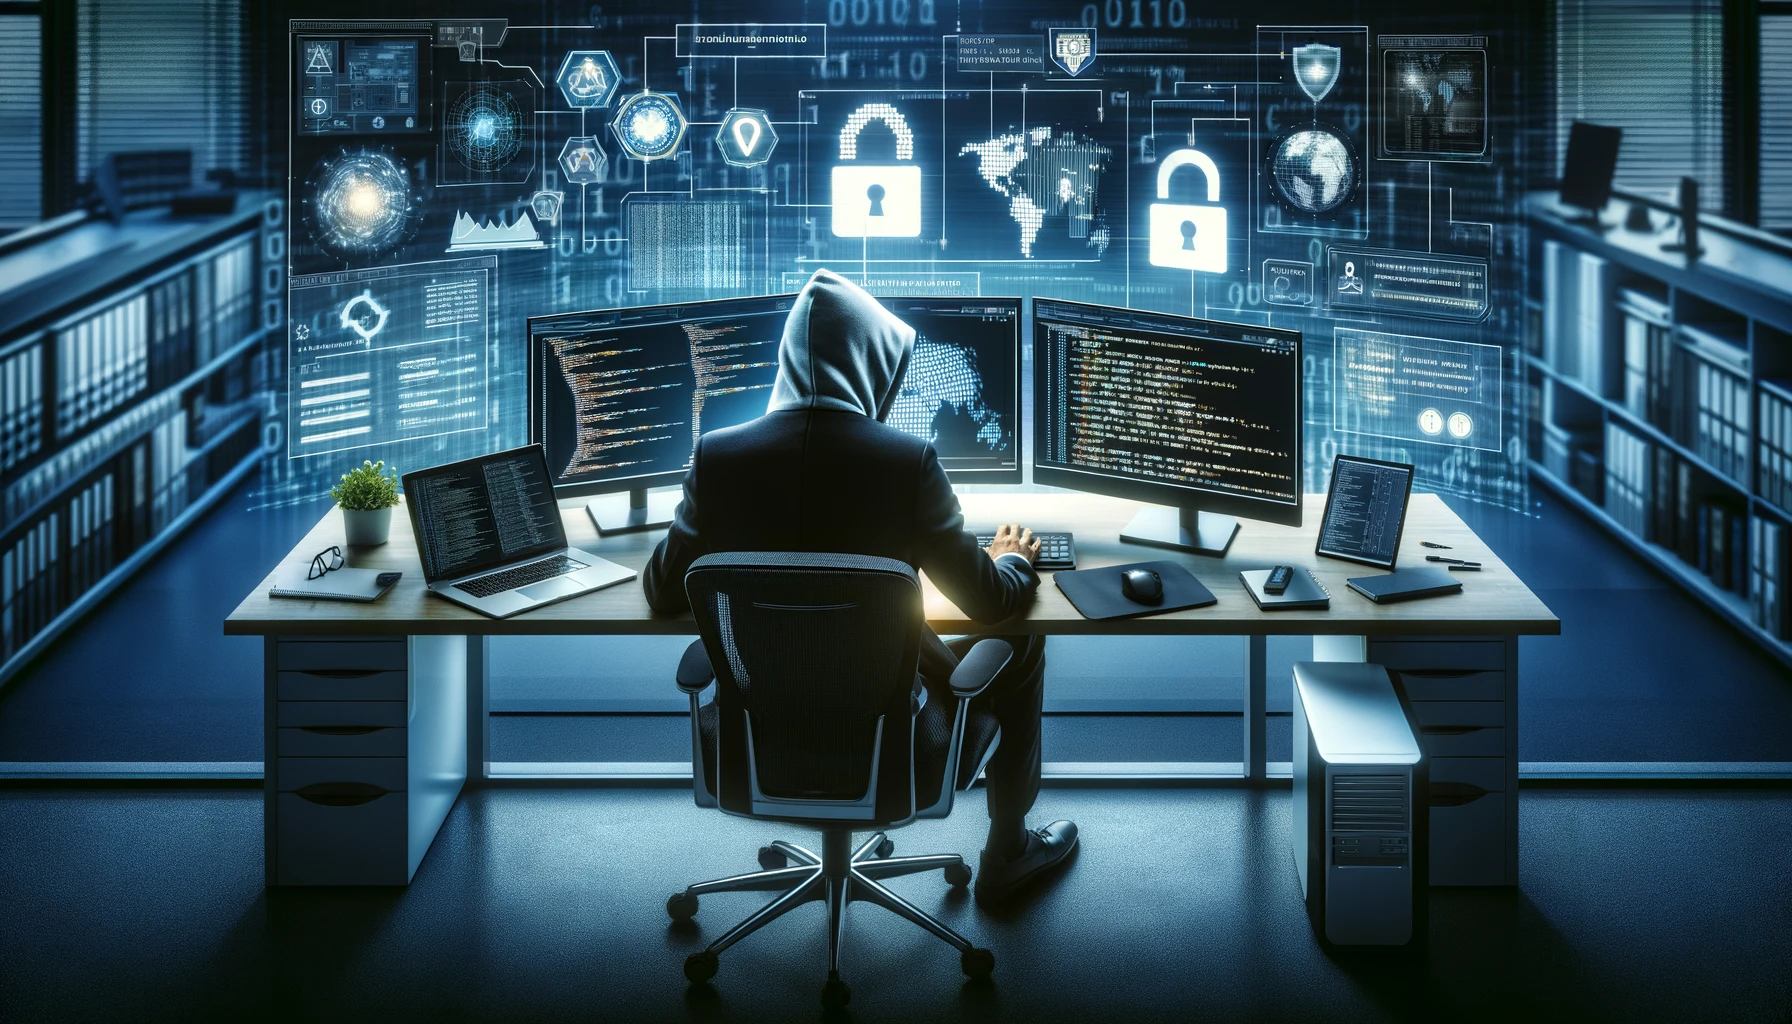 Un Hacker Ético concentrado frente a múltiples pantallas con códigos y redes de seguridad, simbolizando la ciberseguridad y el pentesting en un ambiente digital moderno.